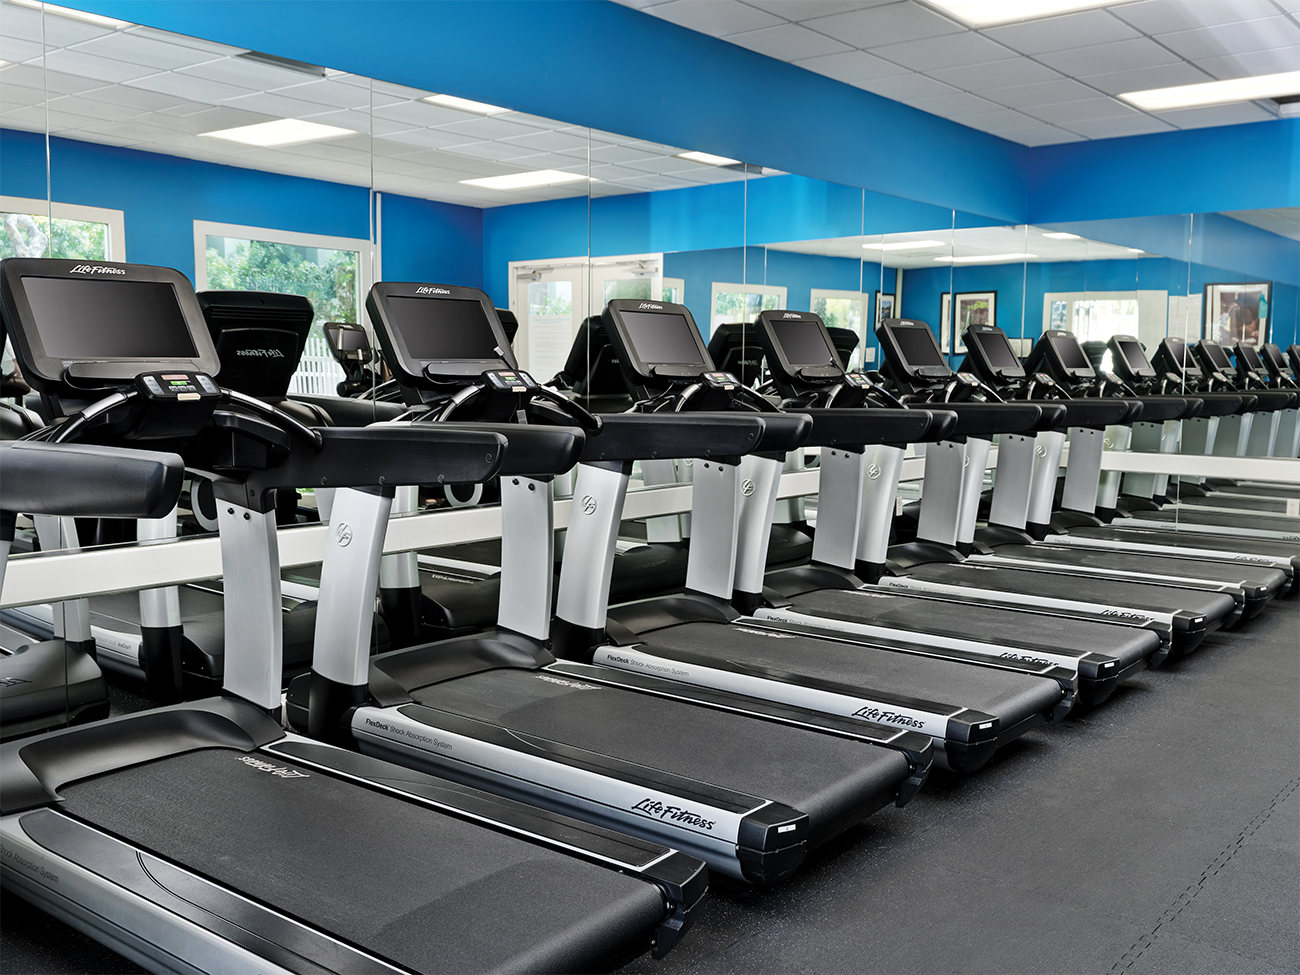 Fitness Center - Cardio Area